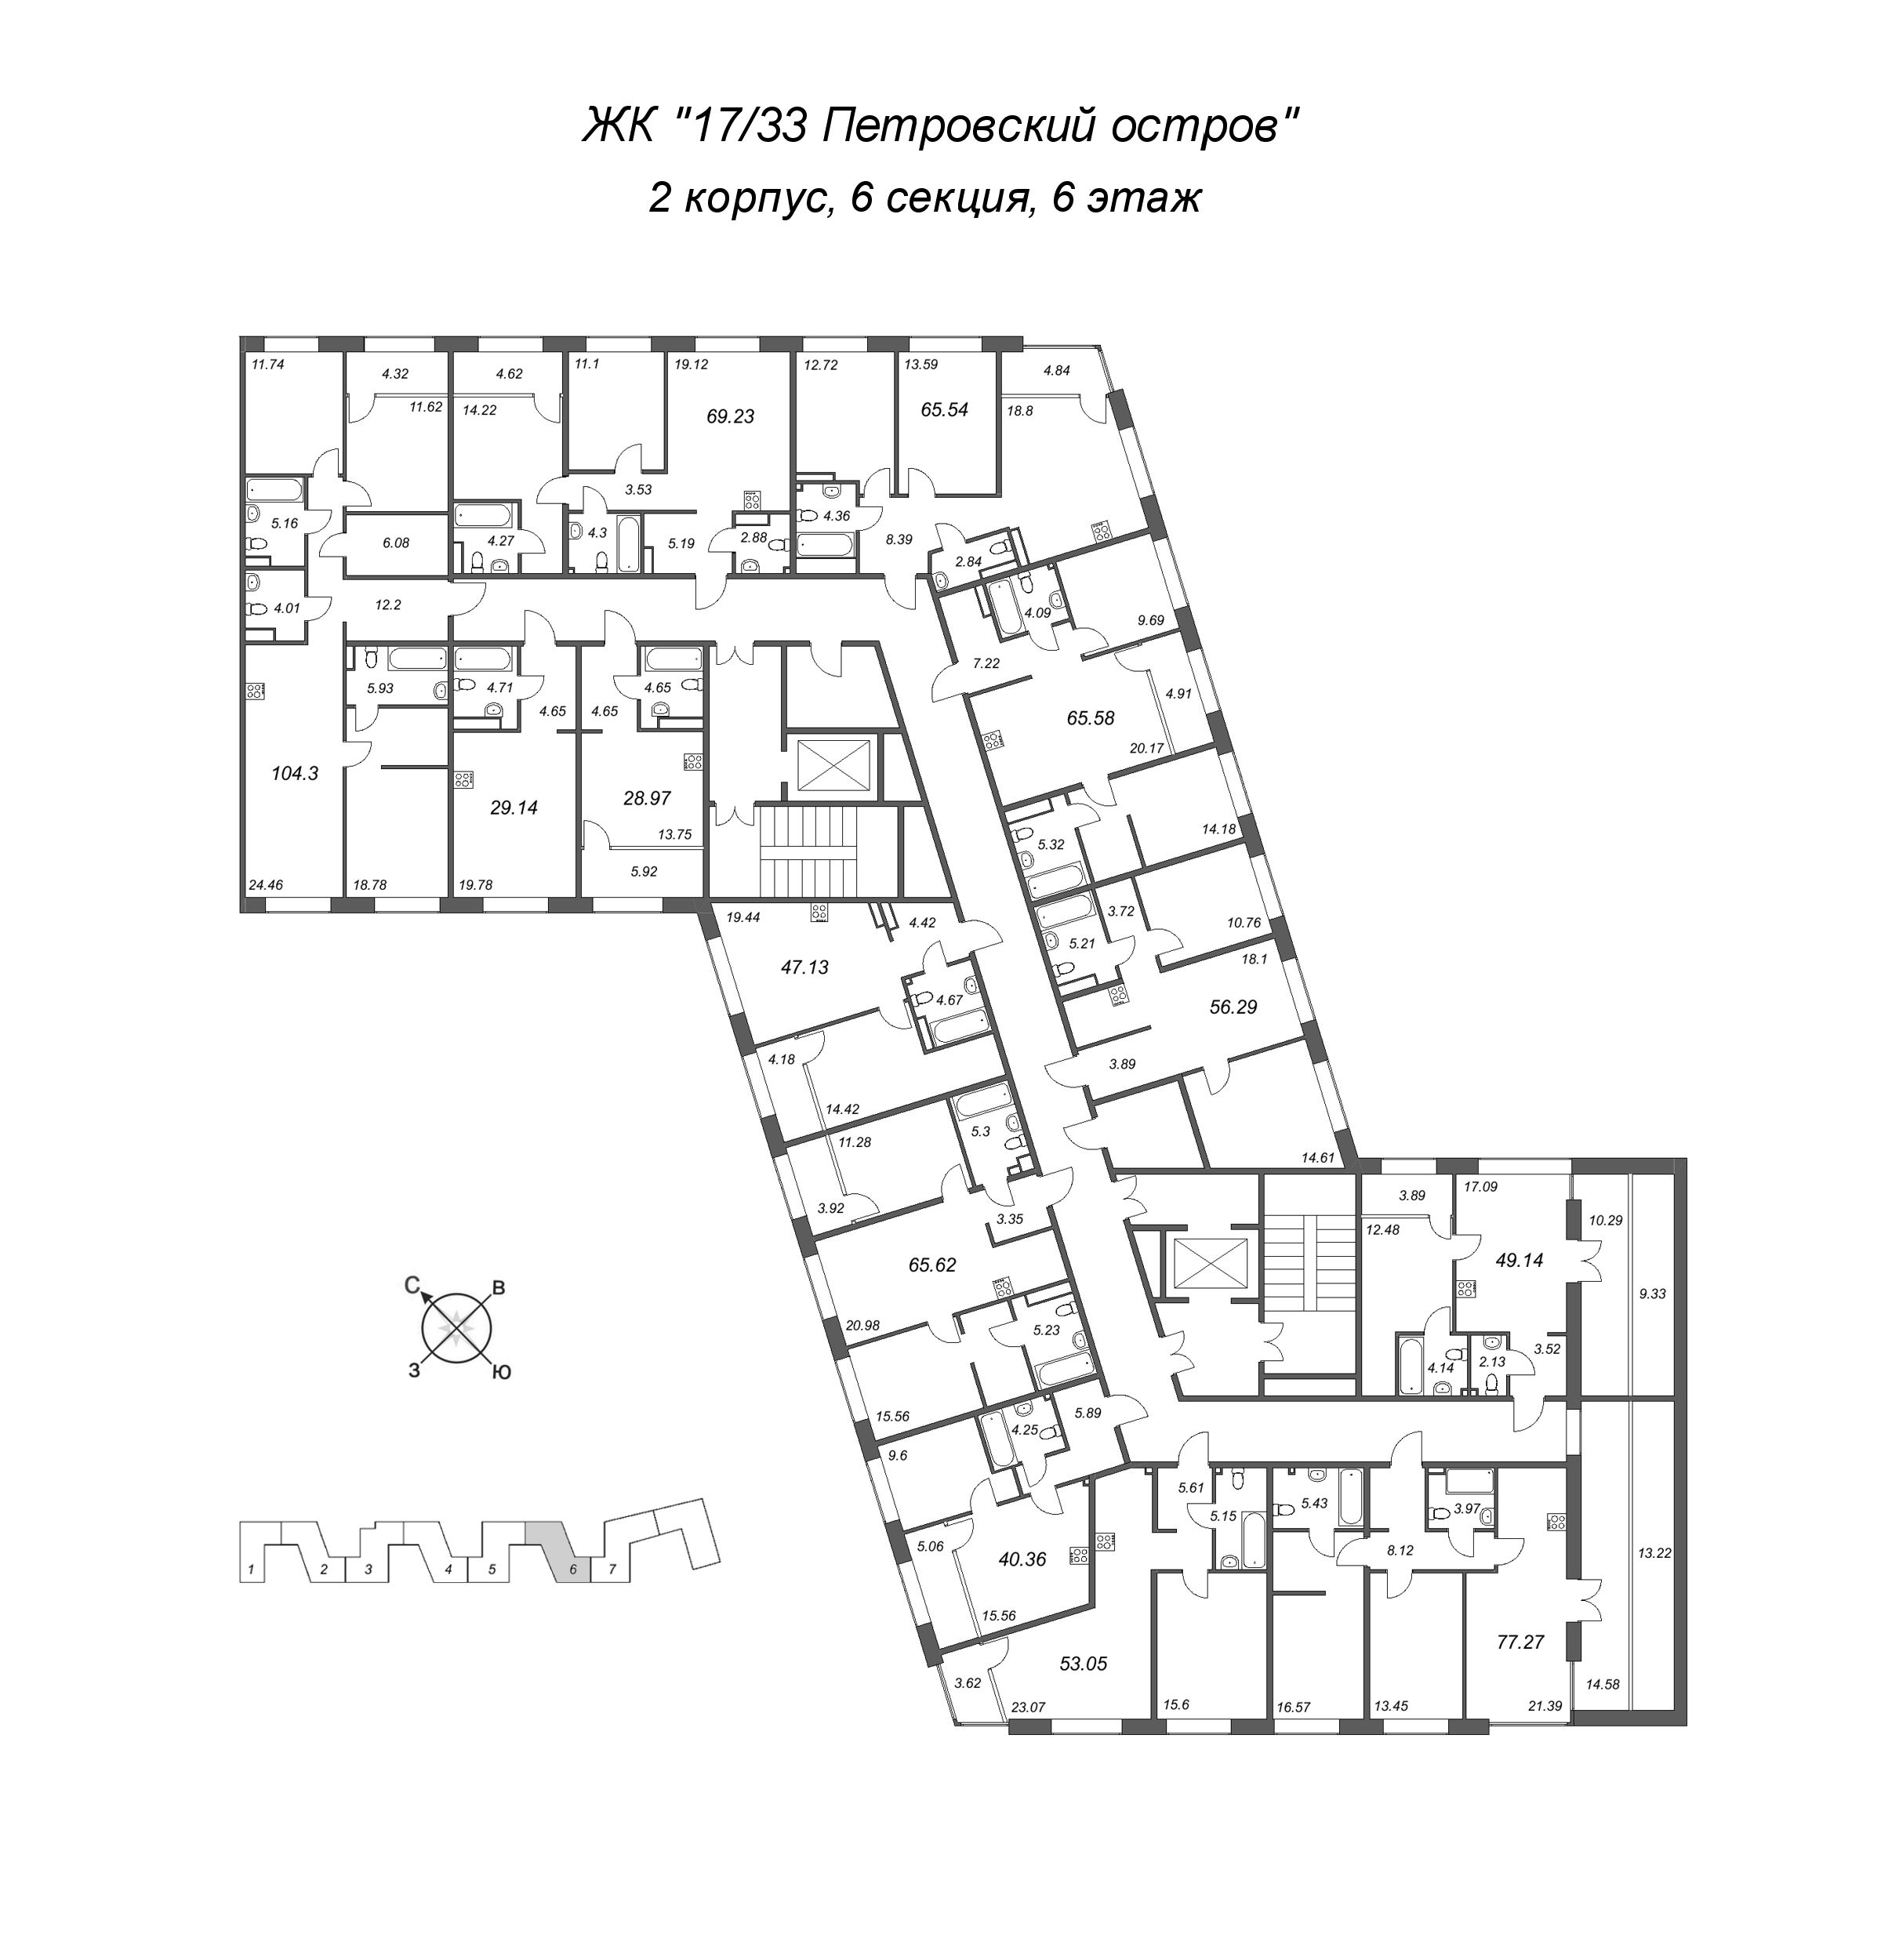 3-комнатная (Евро) квартира, 65.62 м² в ЖК "17/33 Петровский остров" - планировка этажа